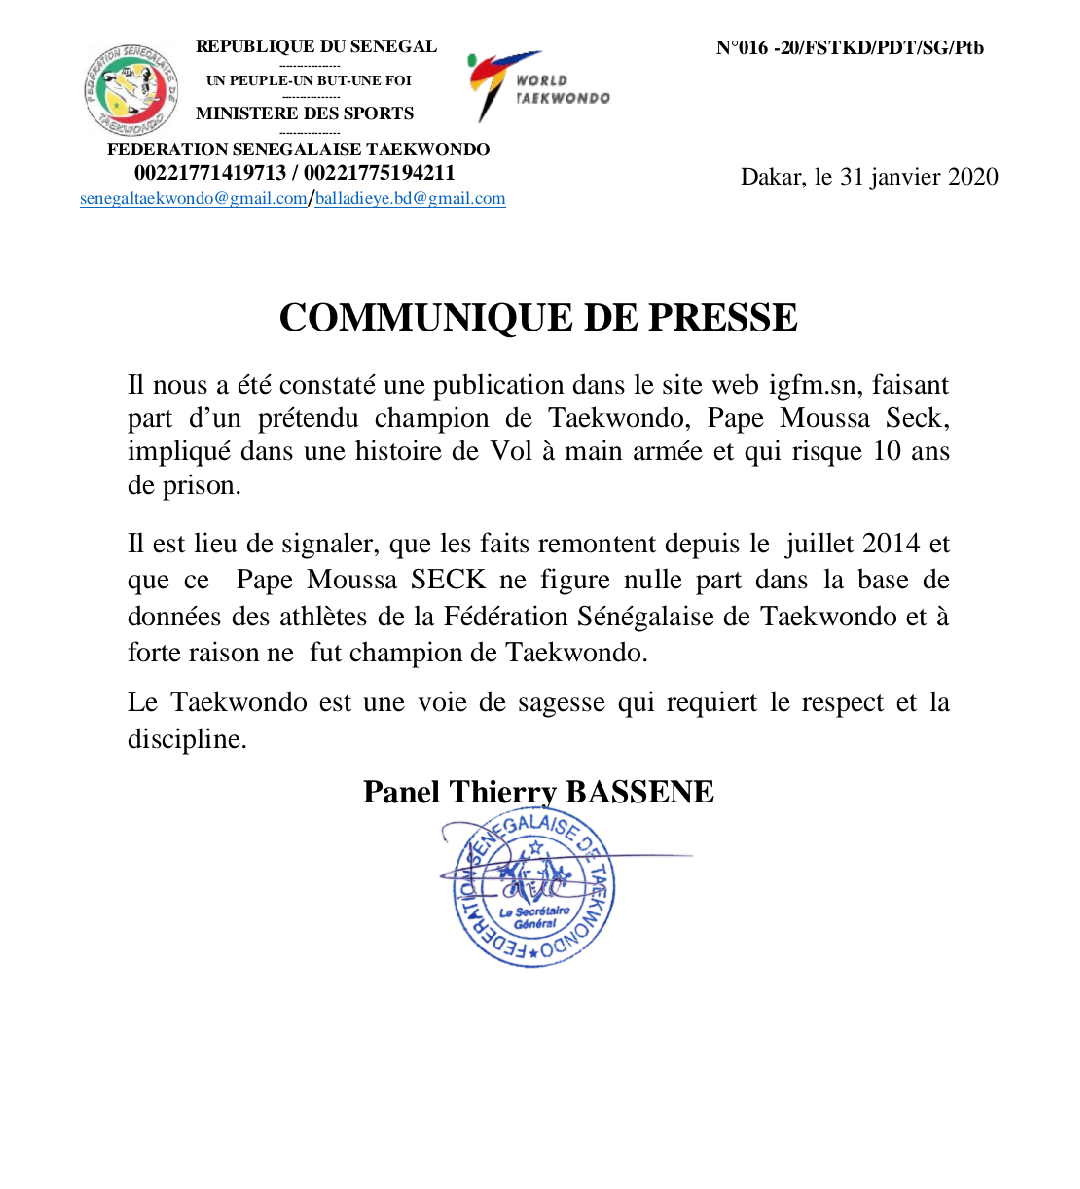 Taekwondo : La fédération "rejette" le soi-disant champion, Pape Moussa Seck, impliqué dans une affaire de vol à main armée (Document)